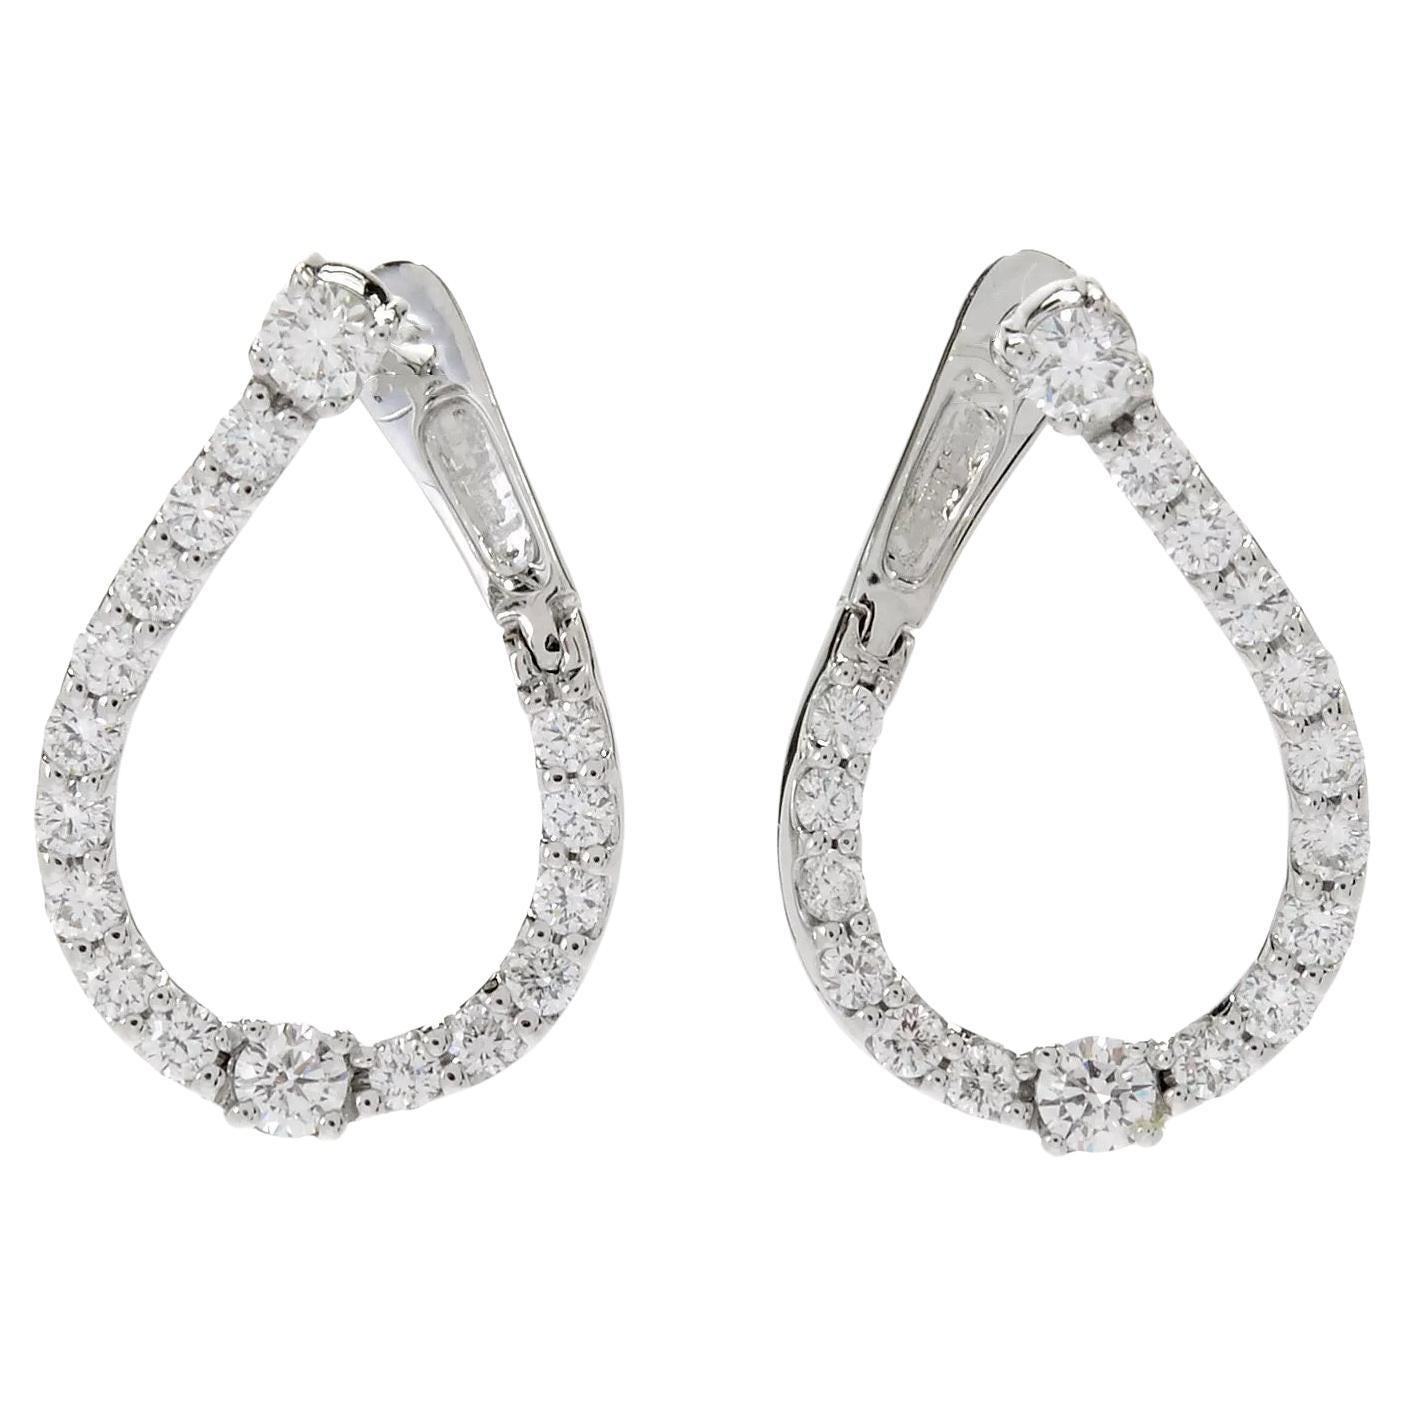  14K White gold Teardrop Silhouette Diamond Hoop Earrings 1.09ct